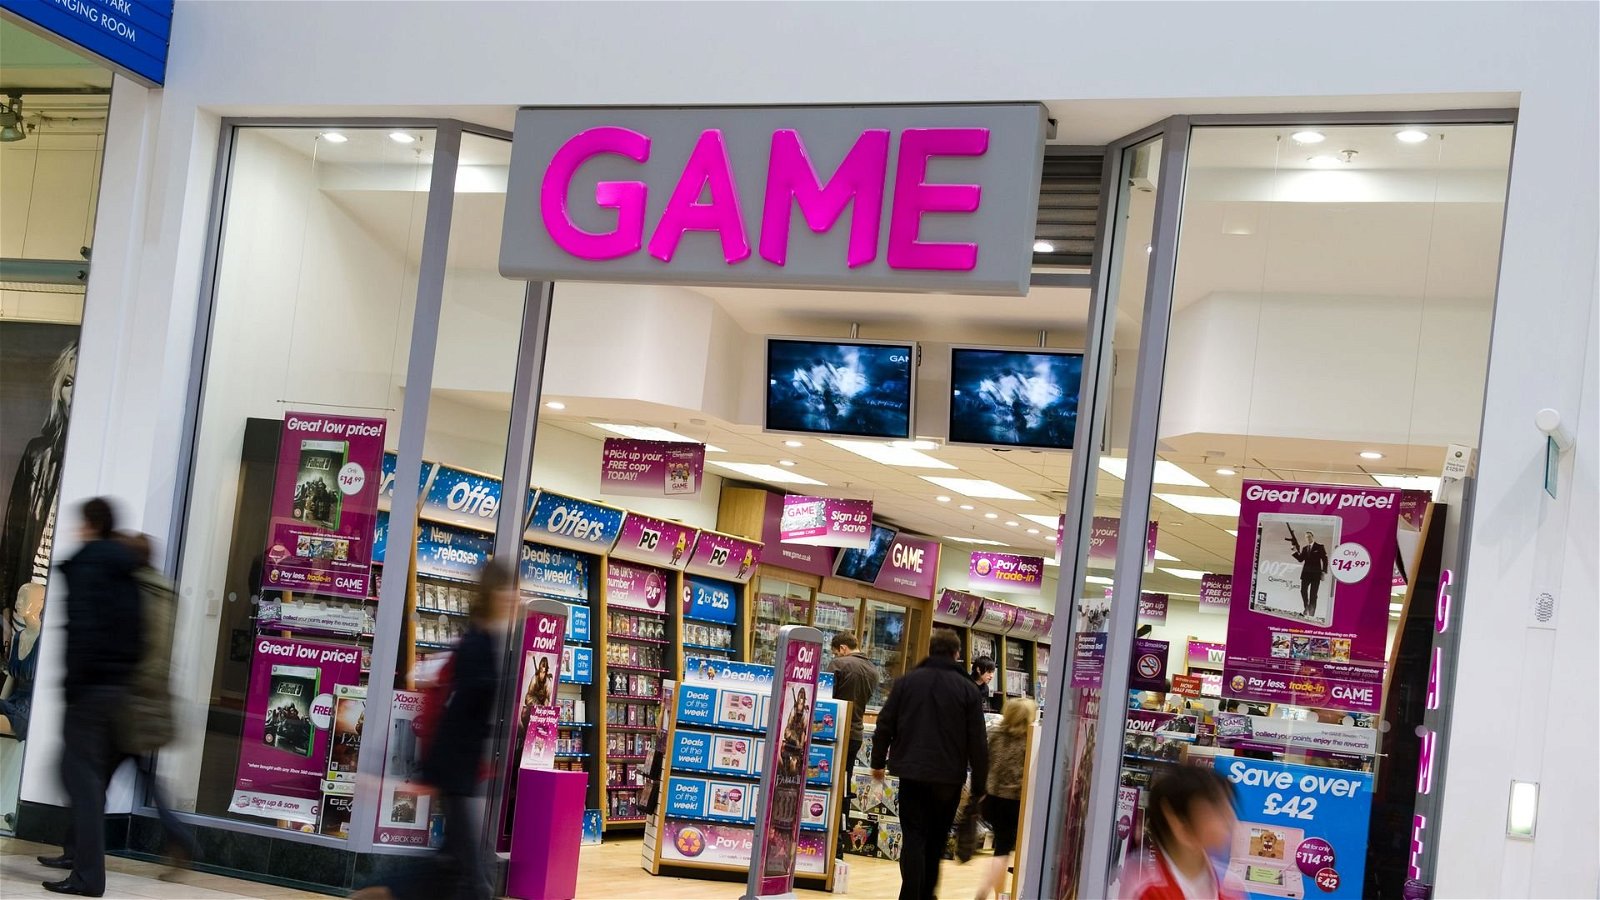 I licenziamenti di massa arrivano nei negozi di videogiochi